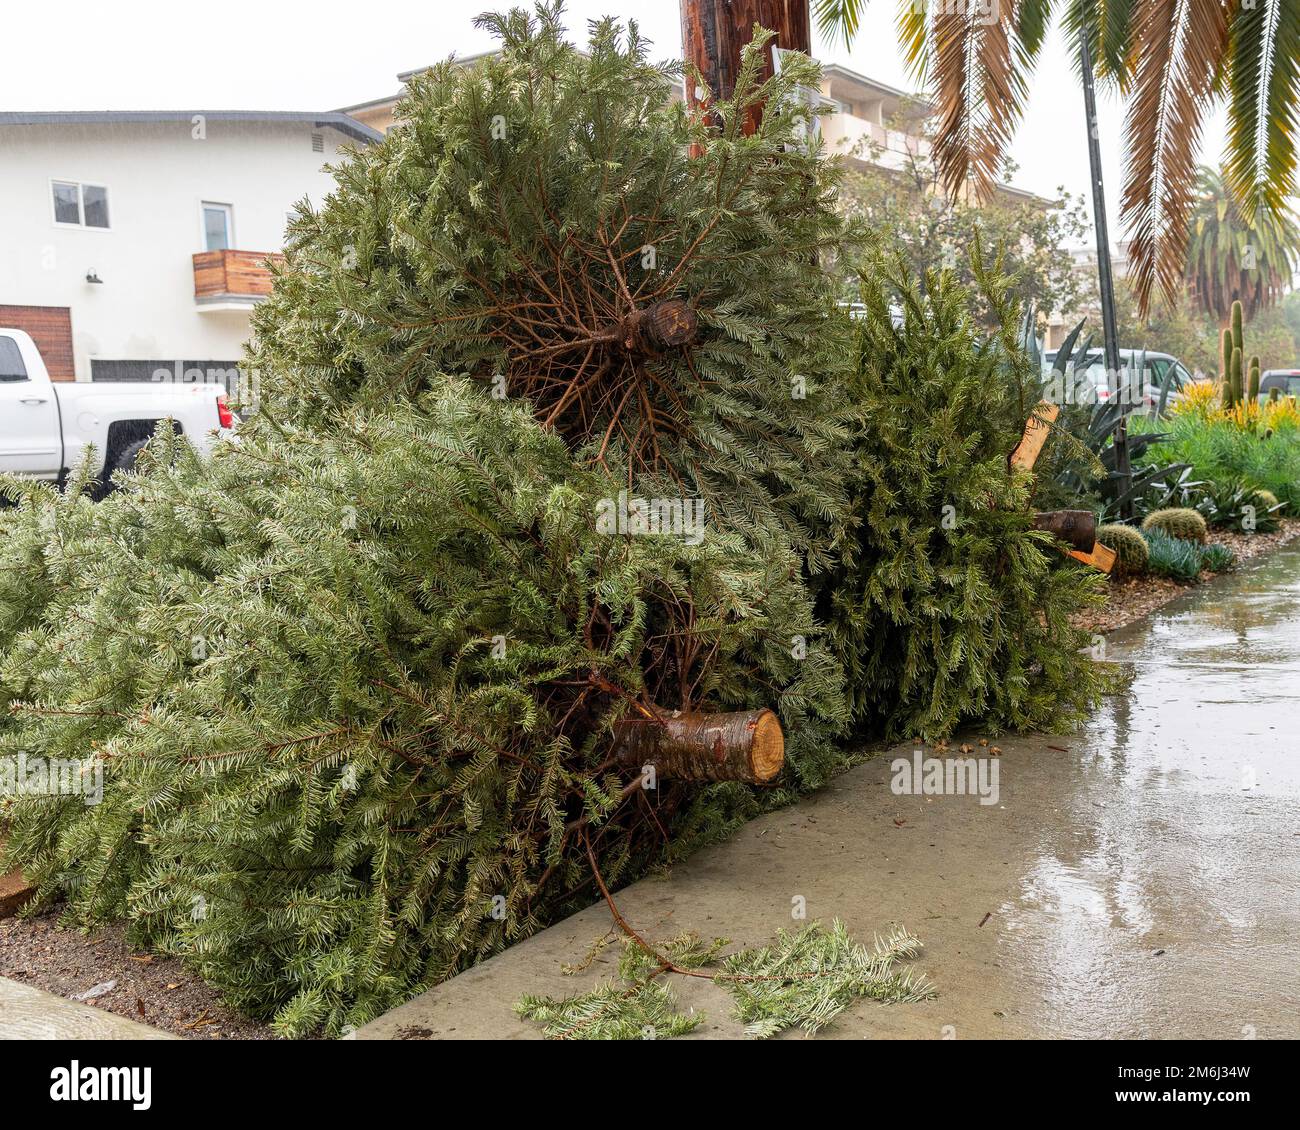 Entsorgte Weihnachtsbäume stapeln sich auf dem Bürgersteig in Los Angeles, Kalifornien. Stockfoto